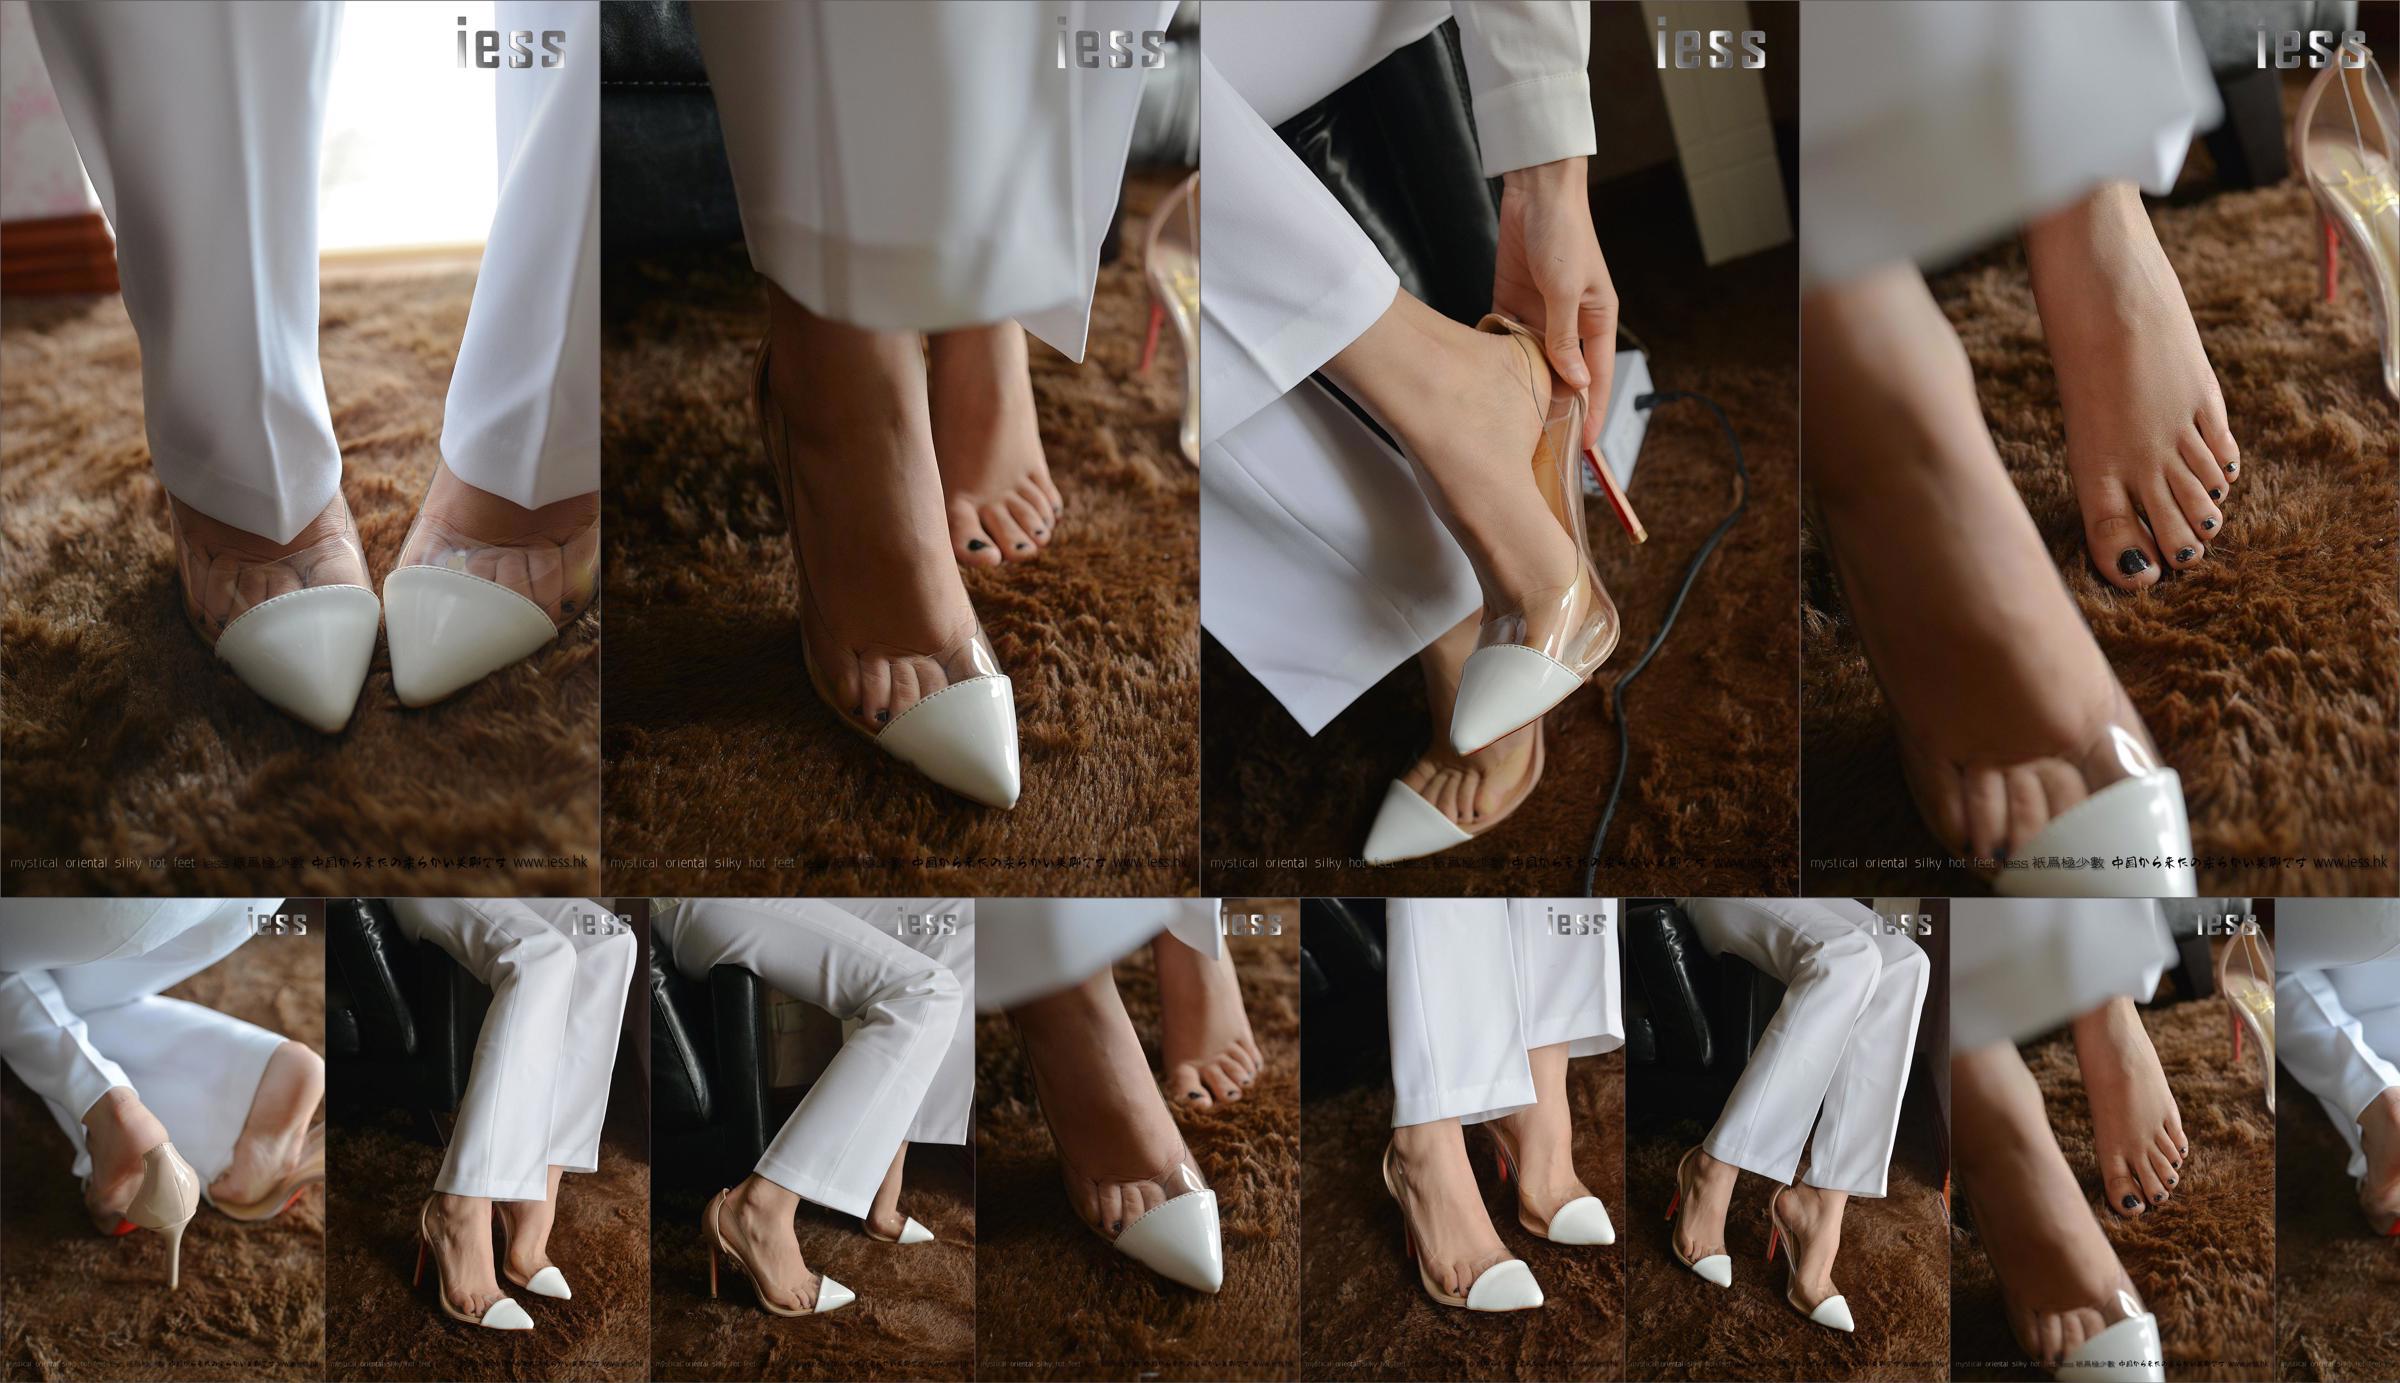 Silky Foot Bento 058 Hồi hộp "Bộ sưu tập-Giày cao gót chân trần" [IESS Wei Si Fun Xiang] No.58a7e5 Trang 20